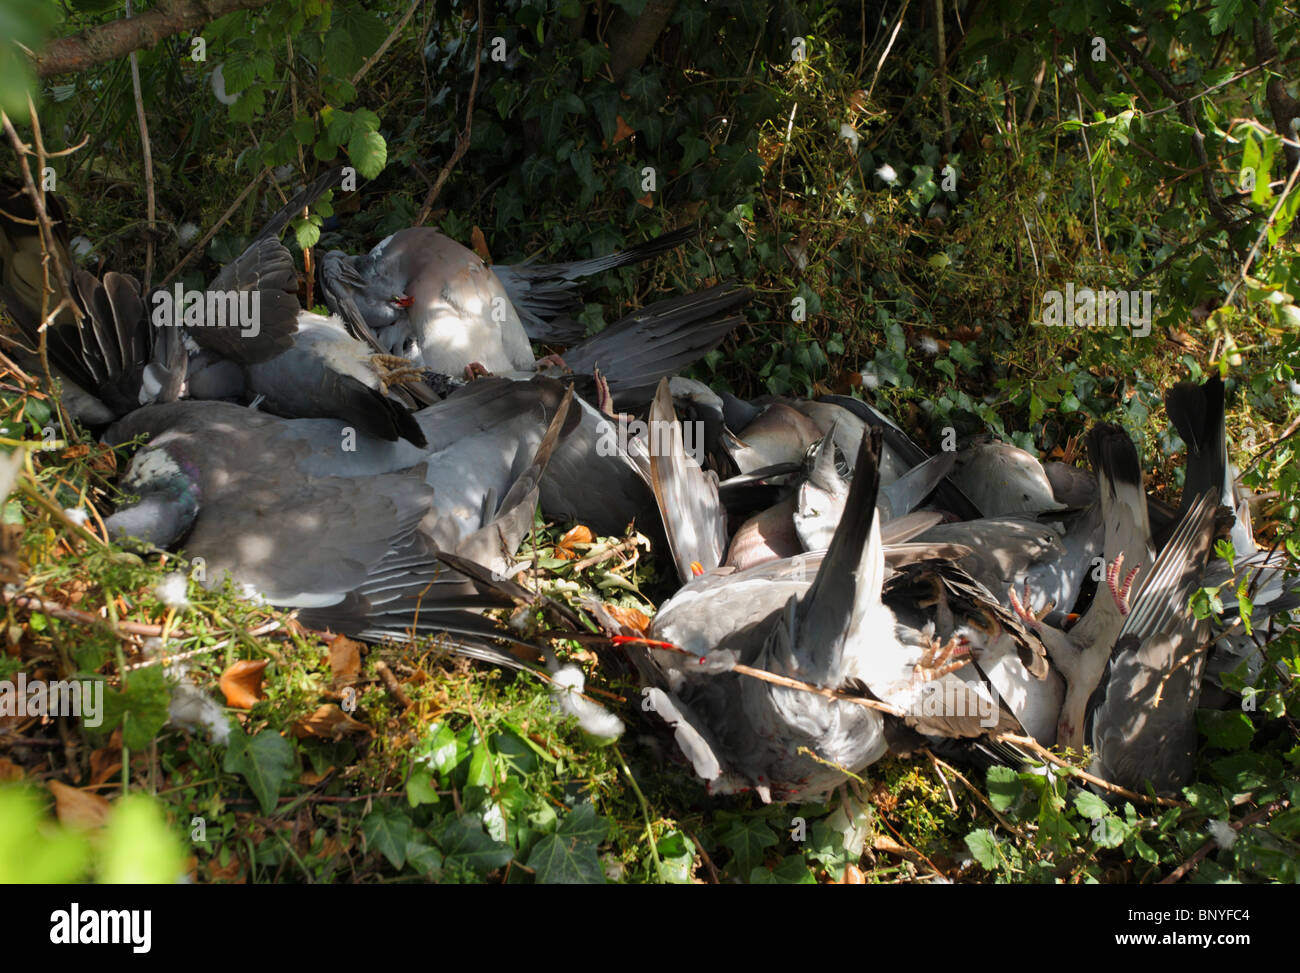 Muerto palomas recién disparado con una escopeta. Foto de stock